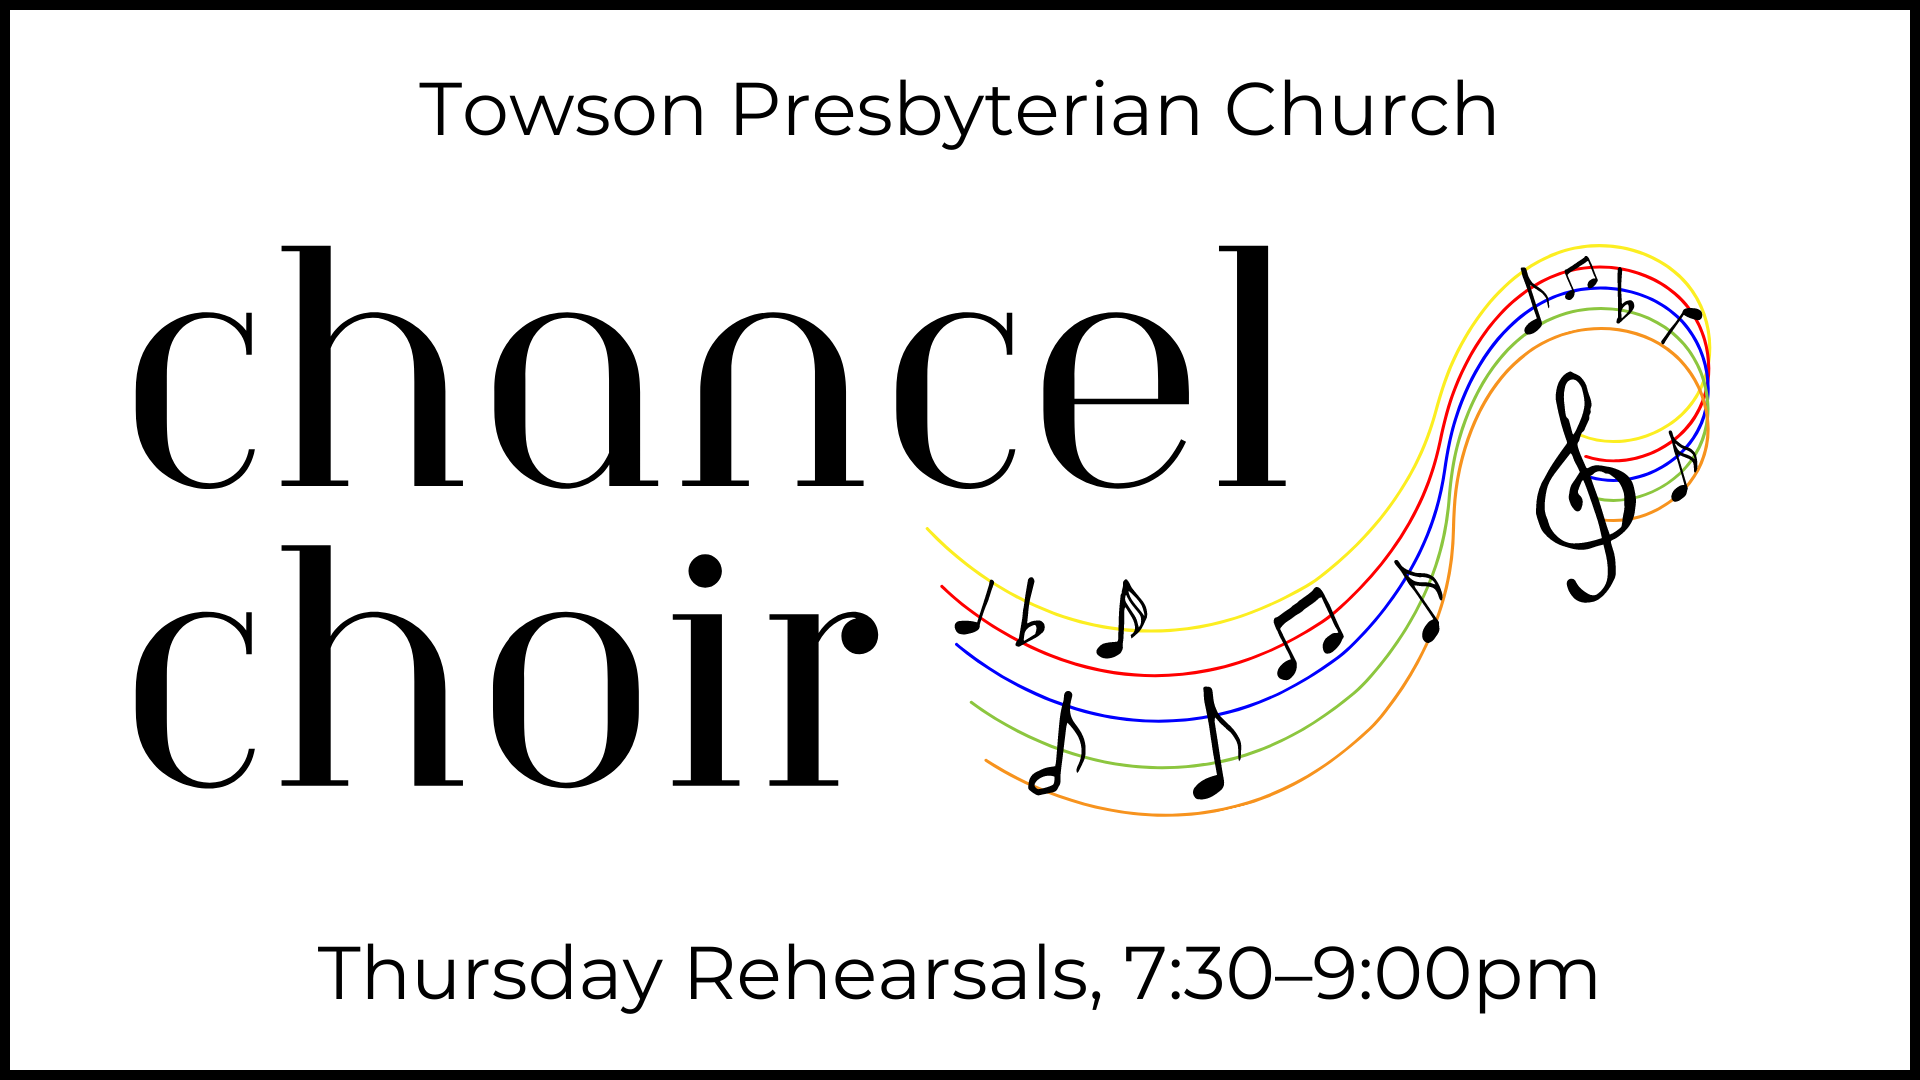 Graphic that says: "Towson Presbyterian Church. Chancel Choir. Thursday Rehearsals 7:30-9:00pm."